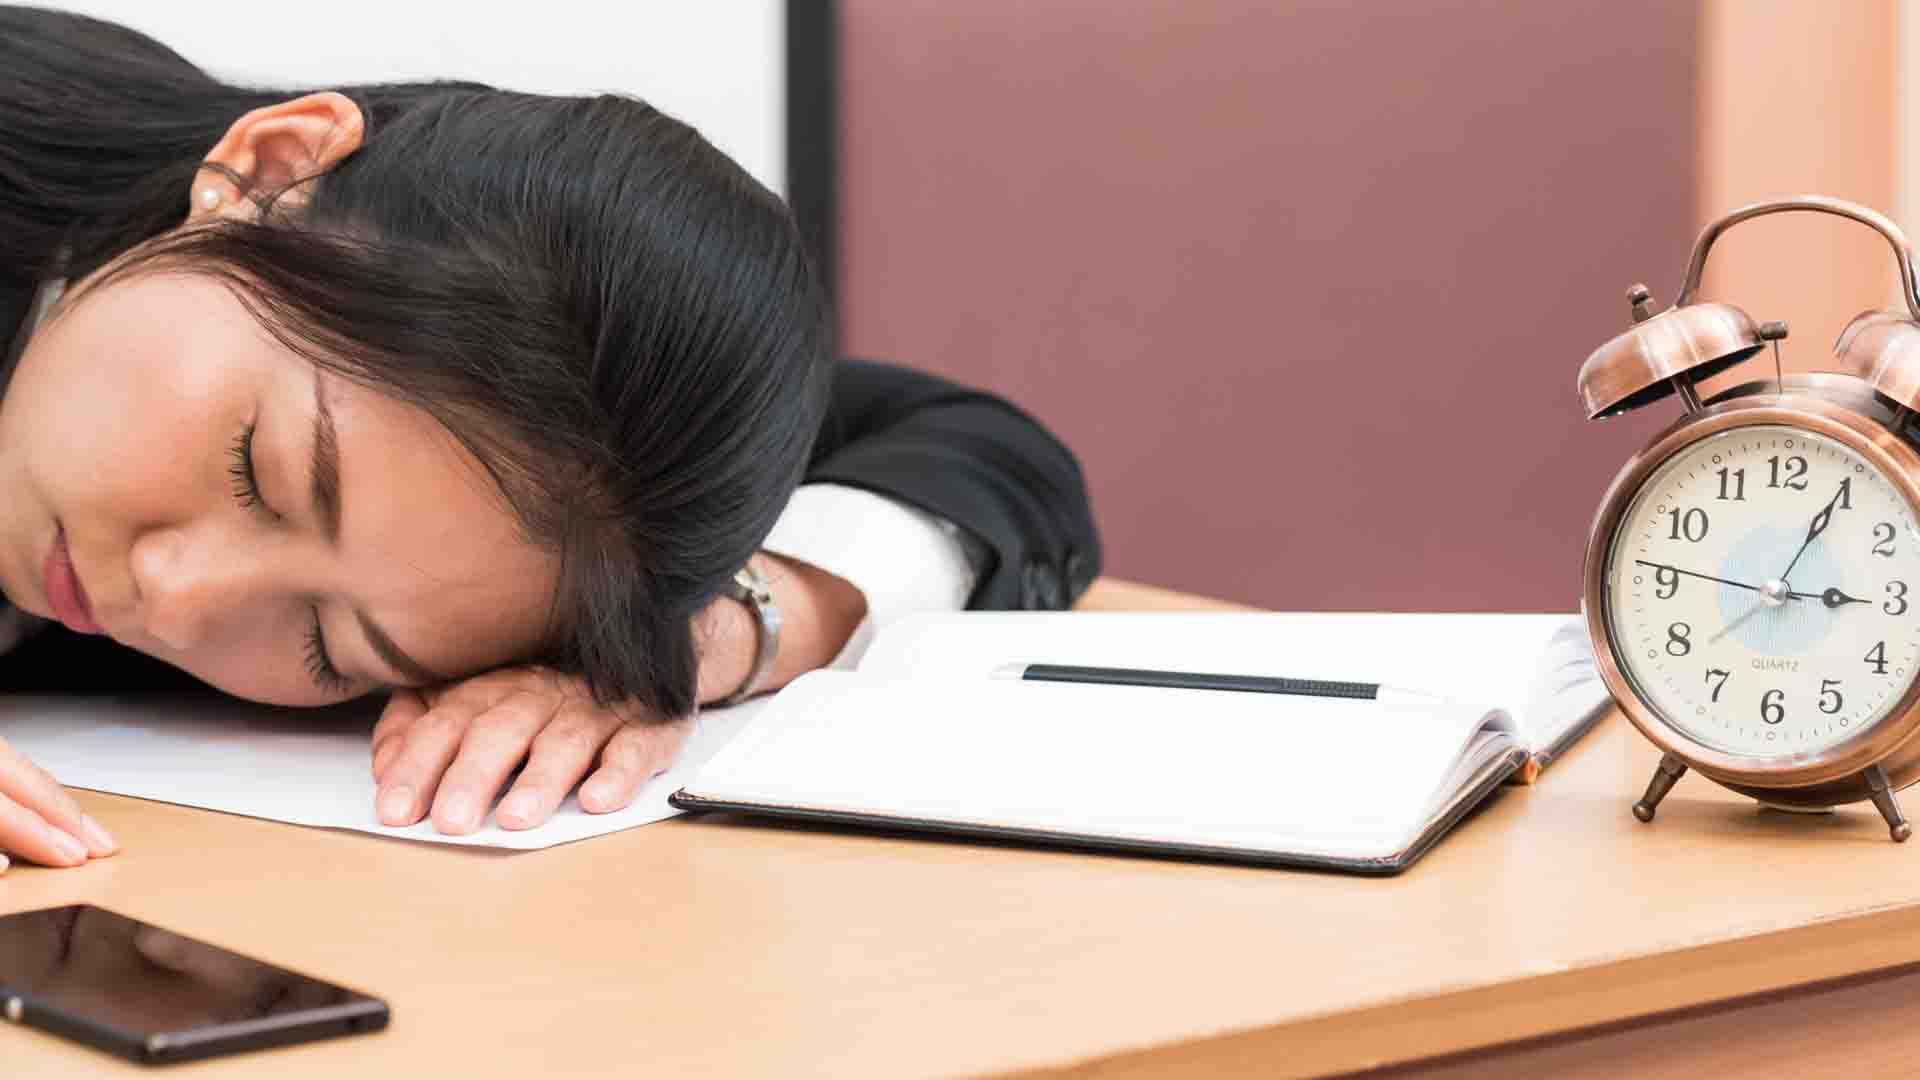 Un des symptômes de la narcolepsie est la somnolence